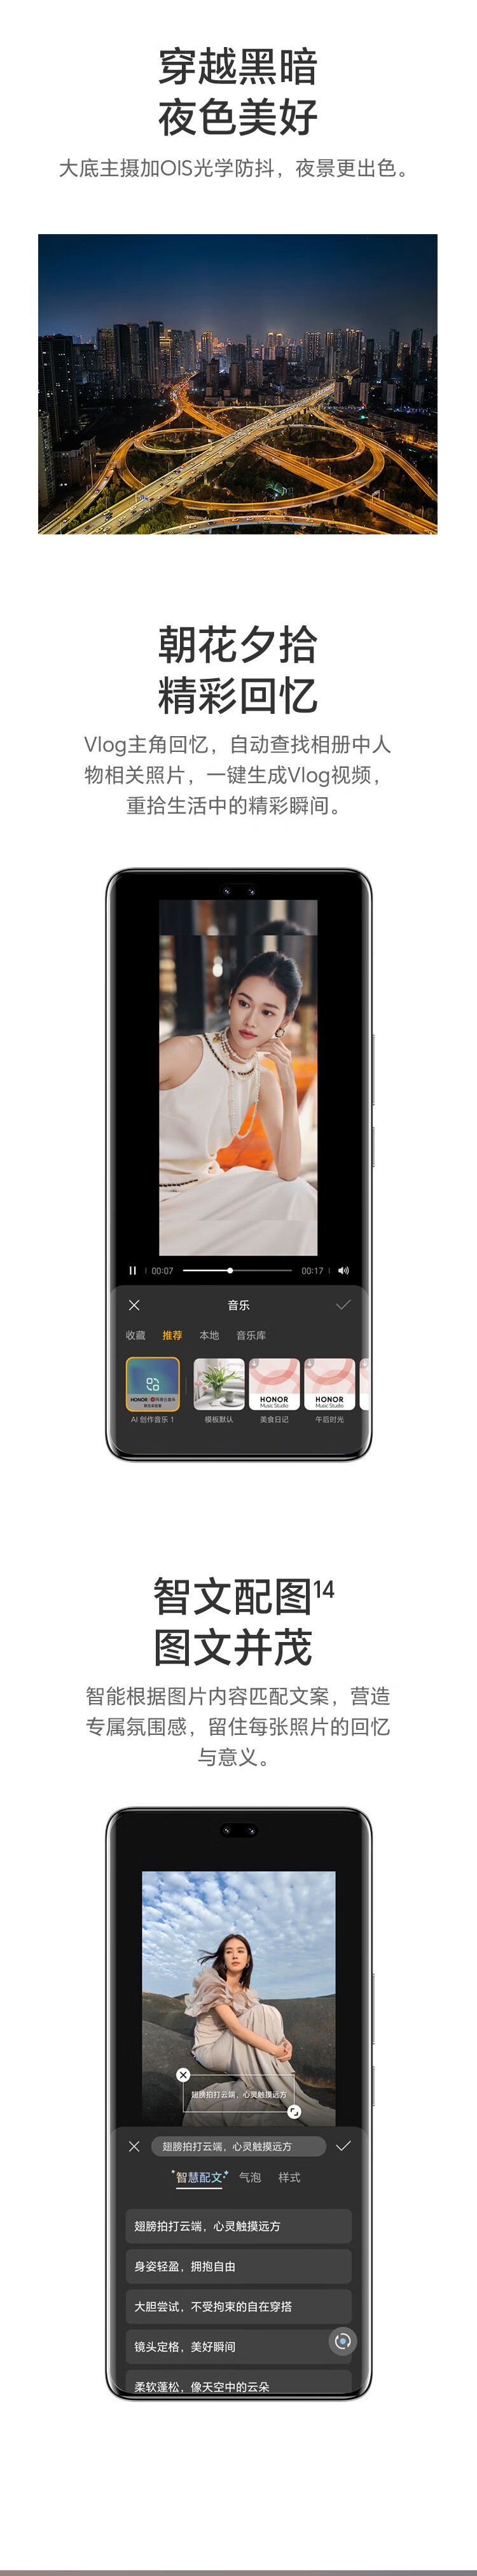 荣耀 100 Pro单反级写真相机 第二代骁龙8旗舰芯片 5G手机